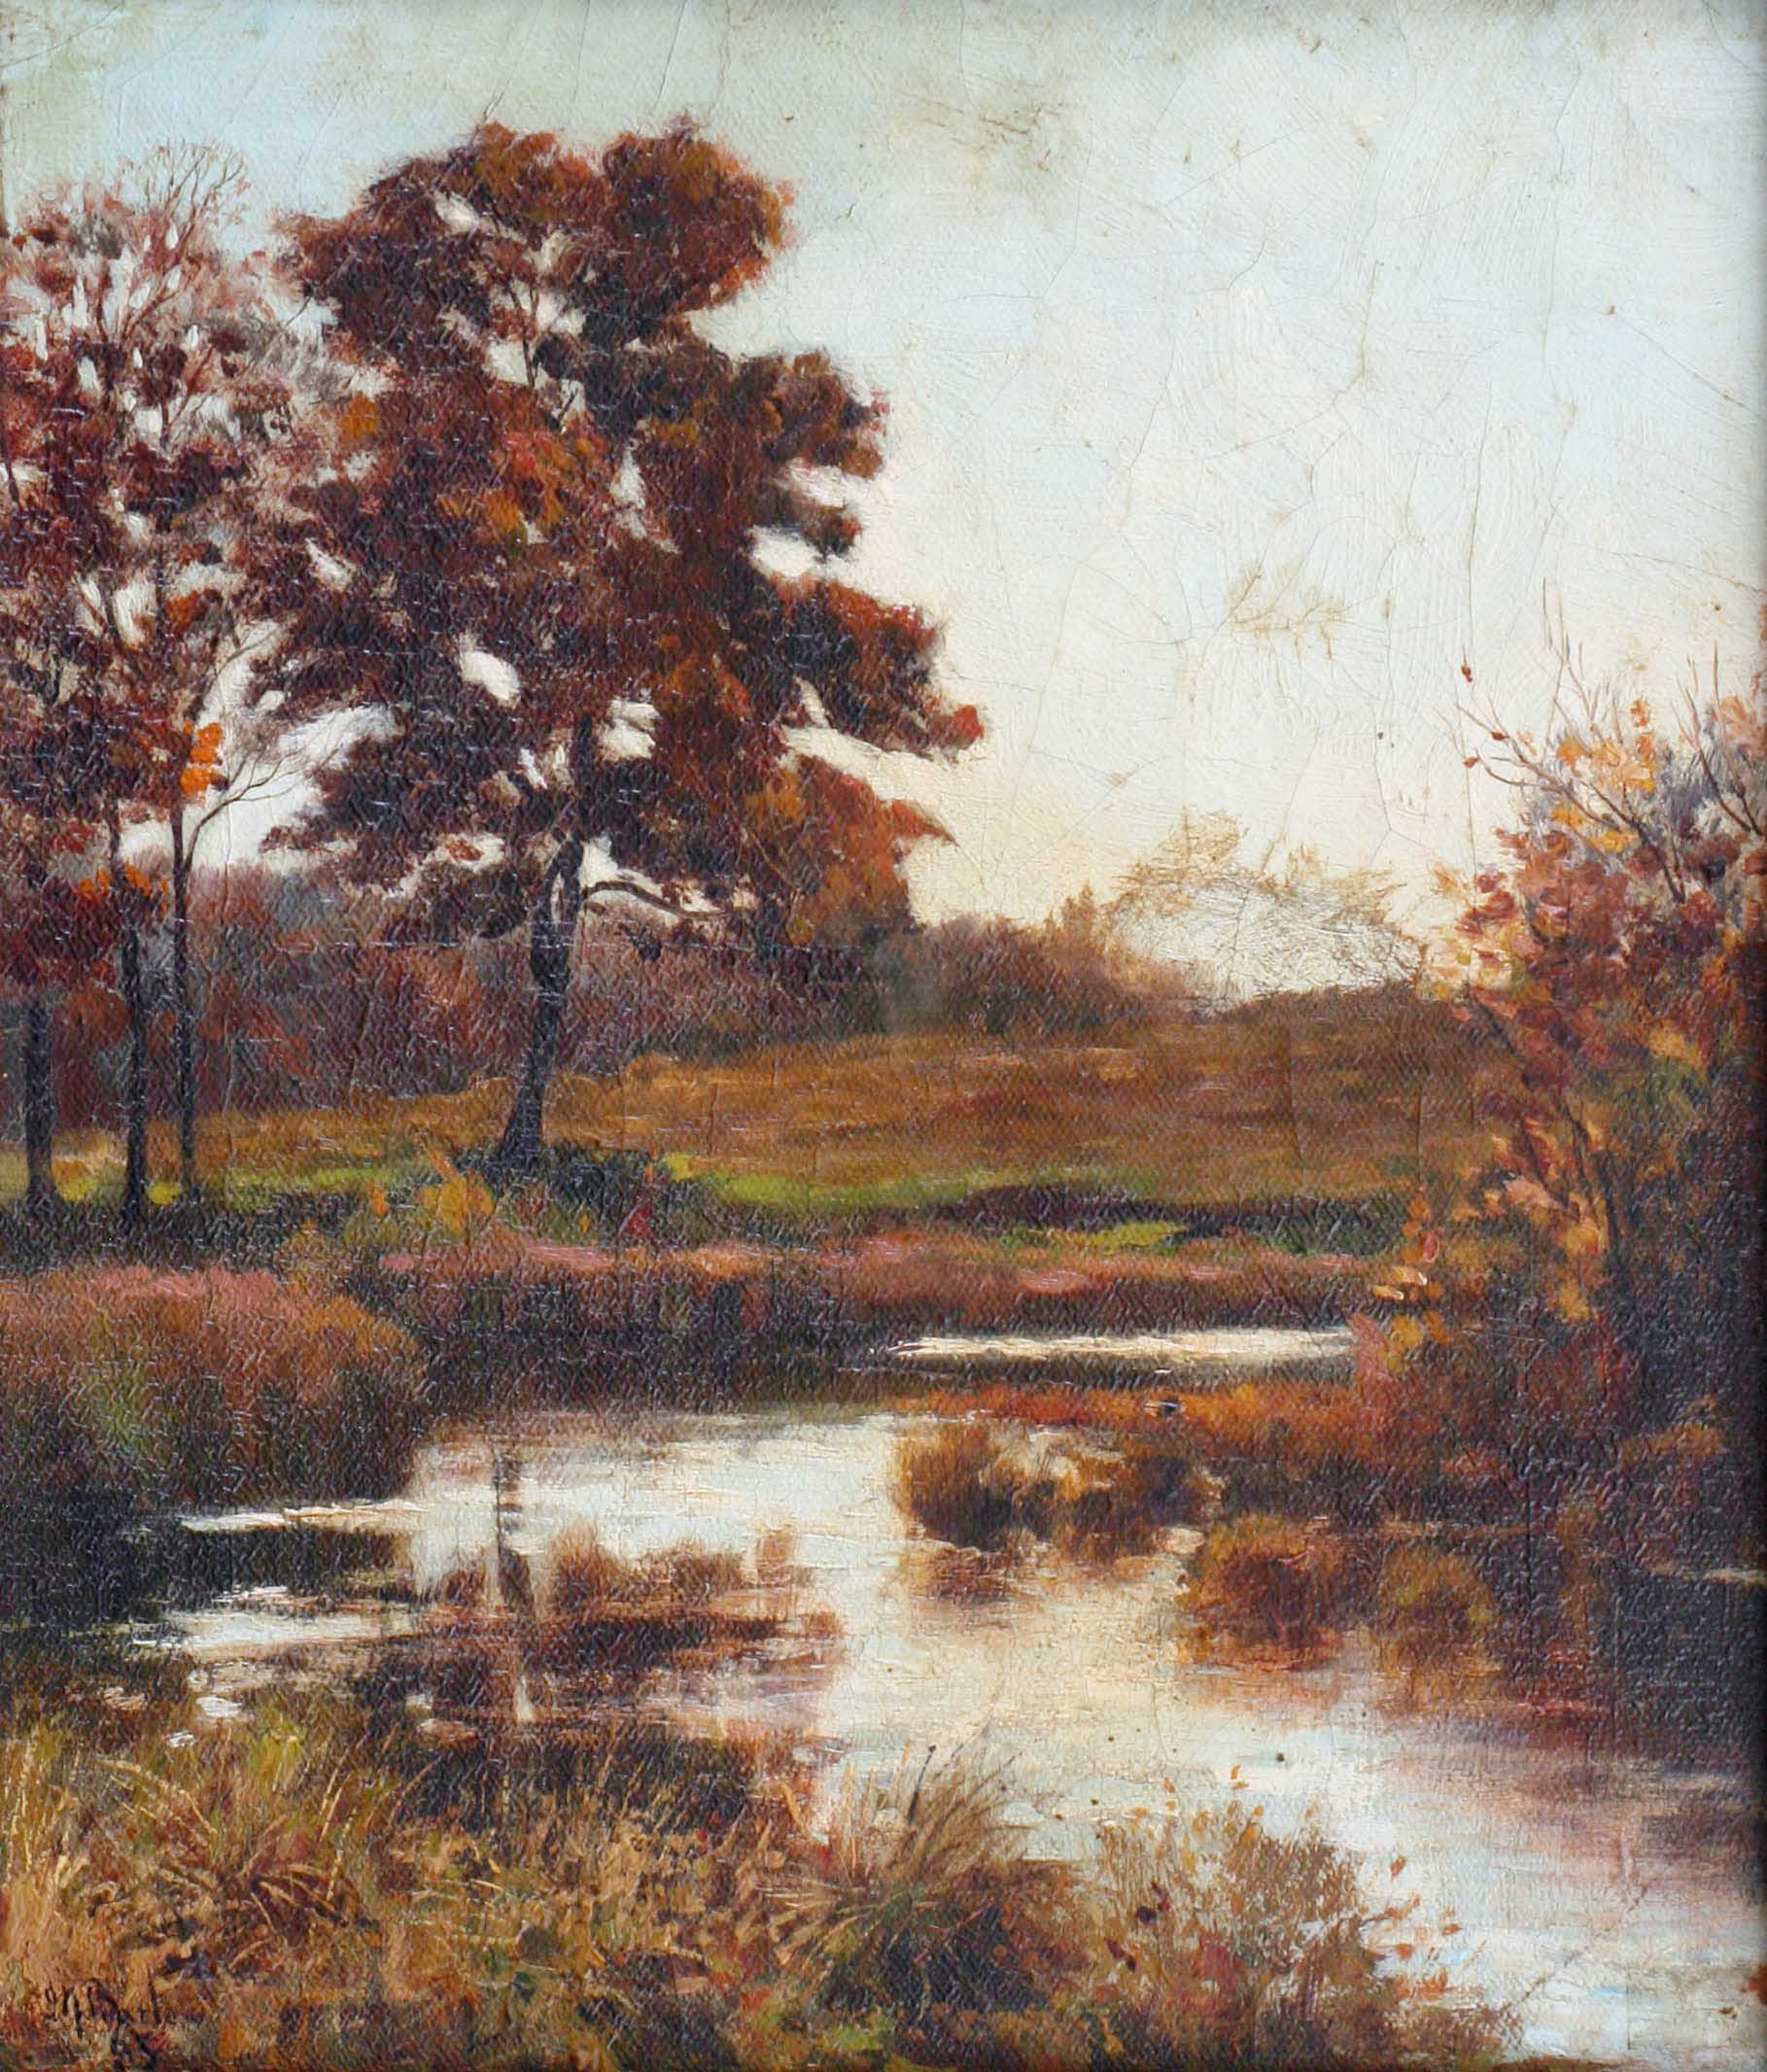 A Stream in Autumn